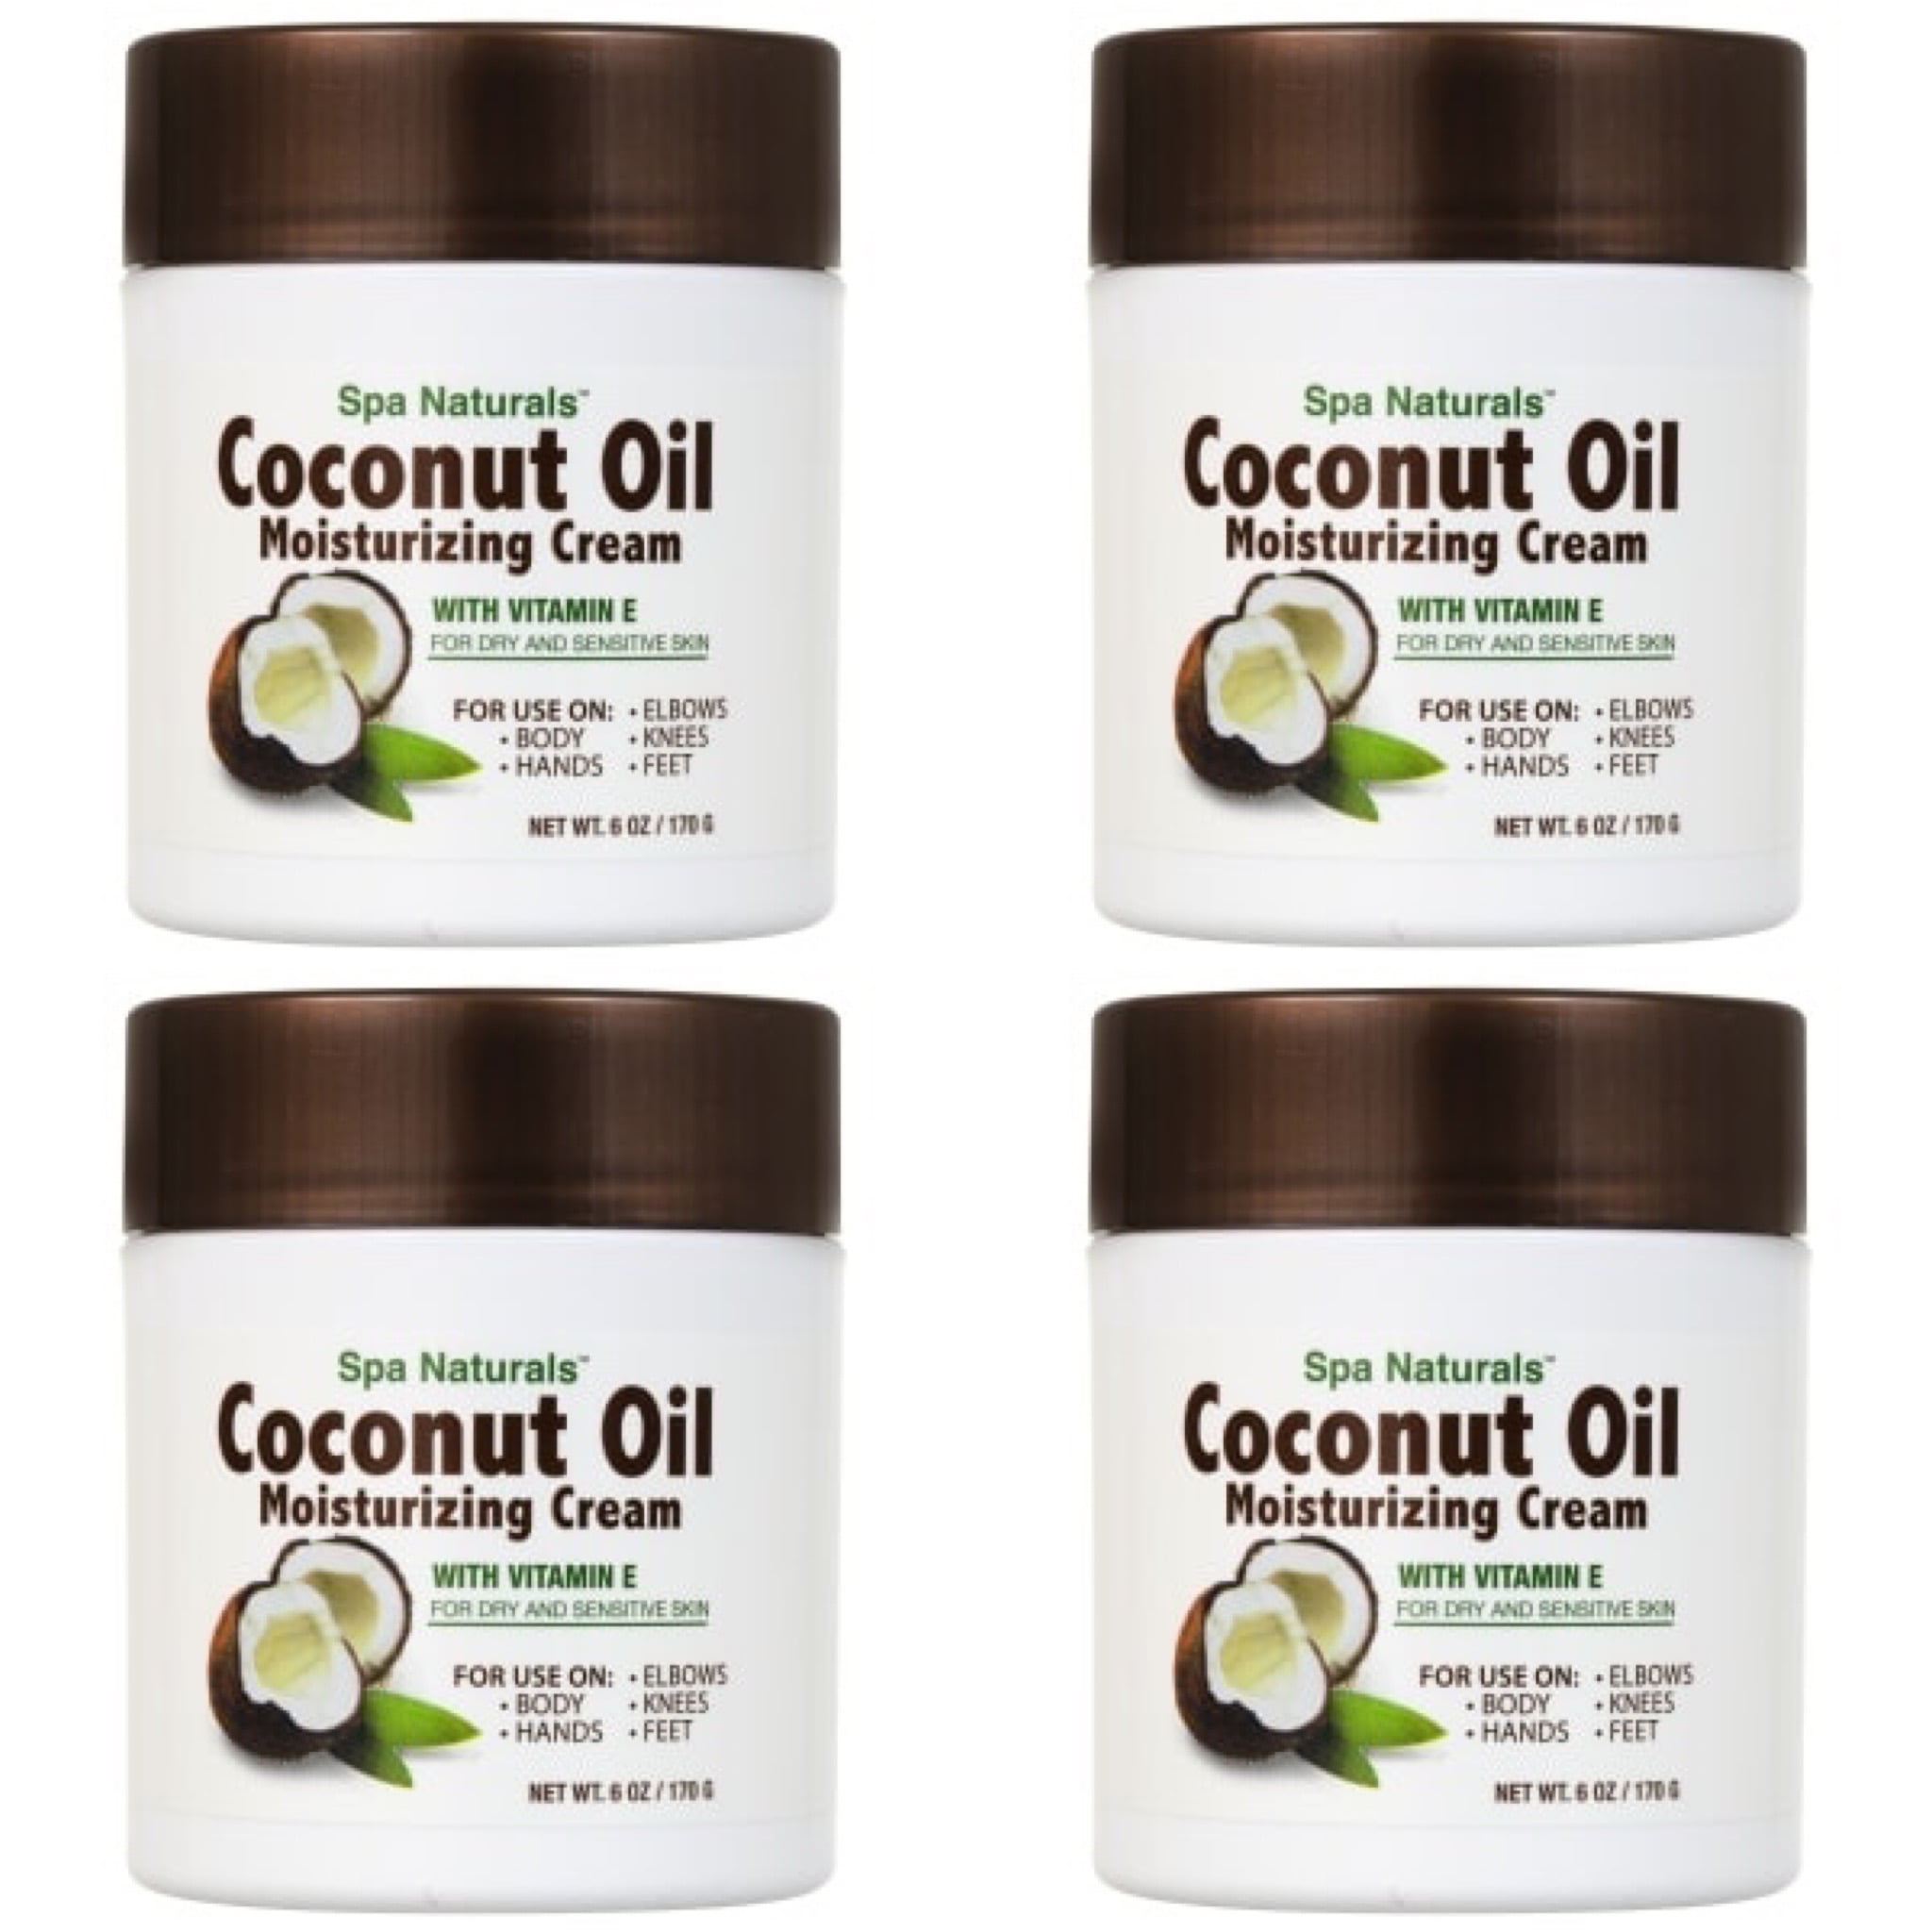 4 Spa Natural Coconut Oil Moisturizing Body Cream With Vitamin E For